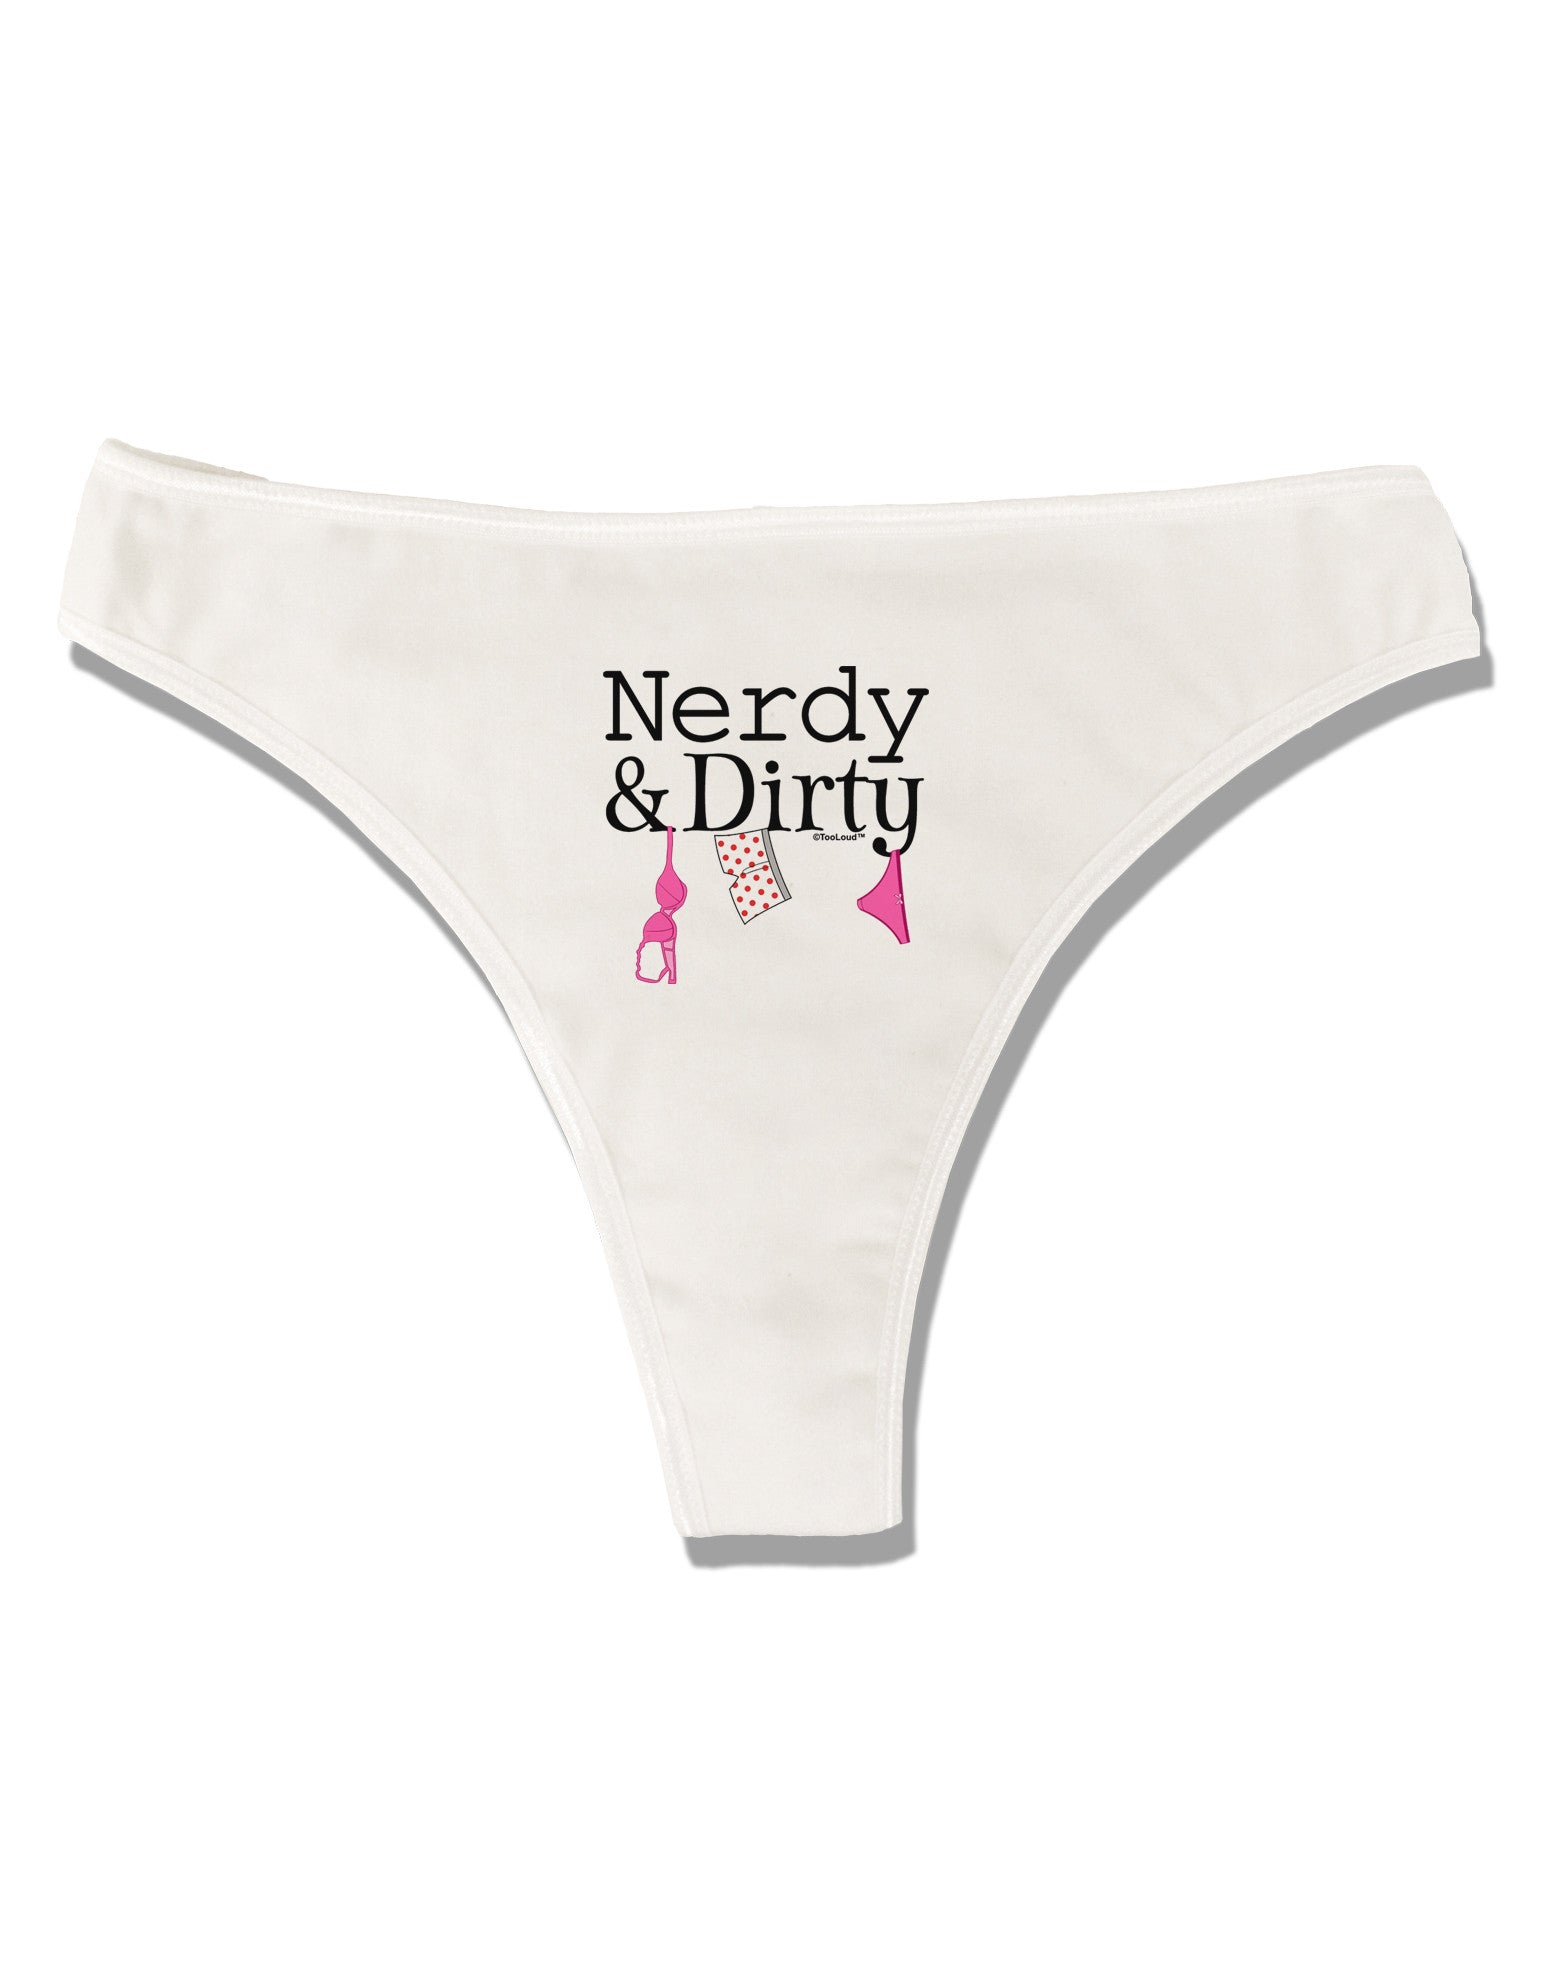 Nerdy is the New Sexy Women's Cotton Boyshort Underwear